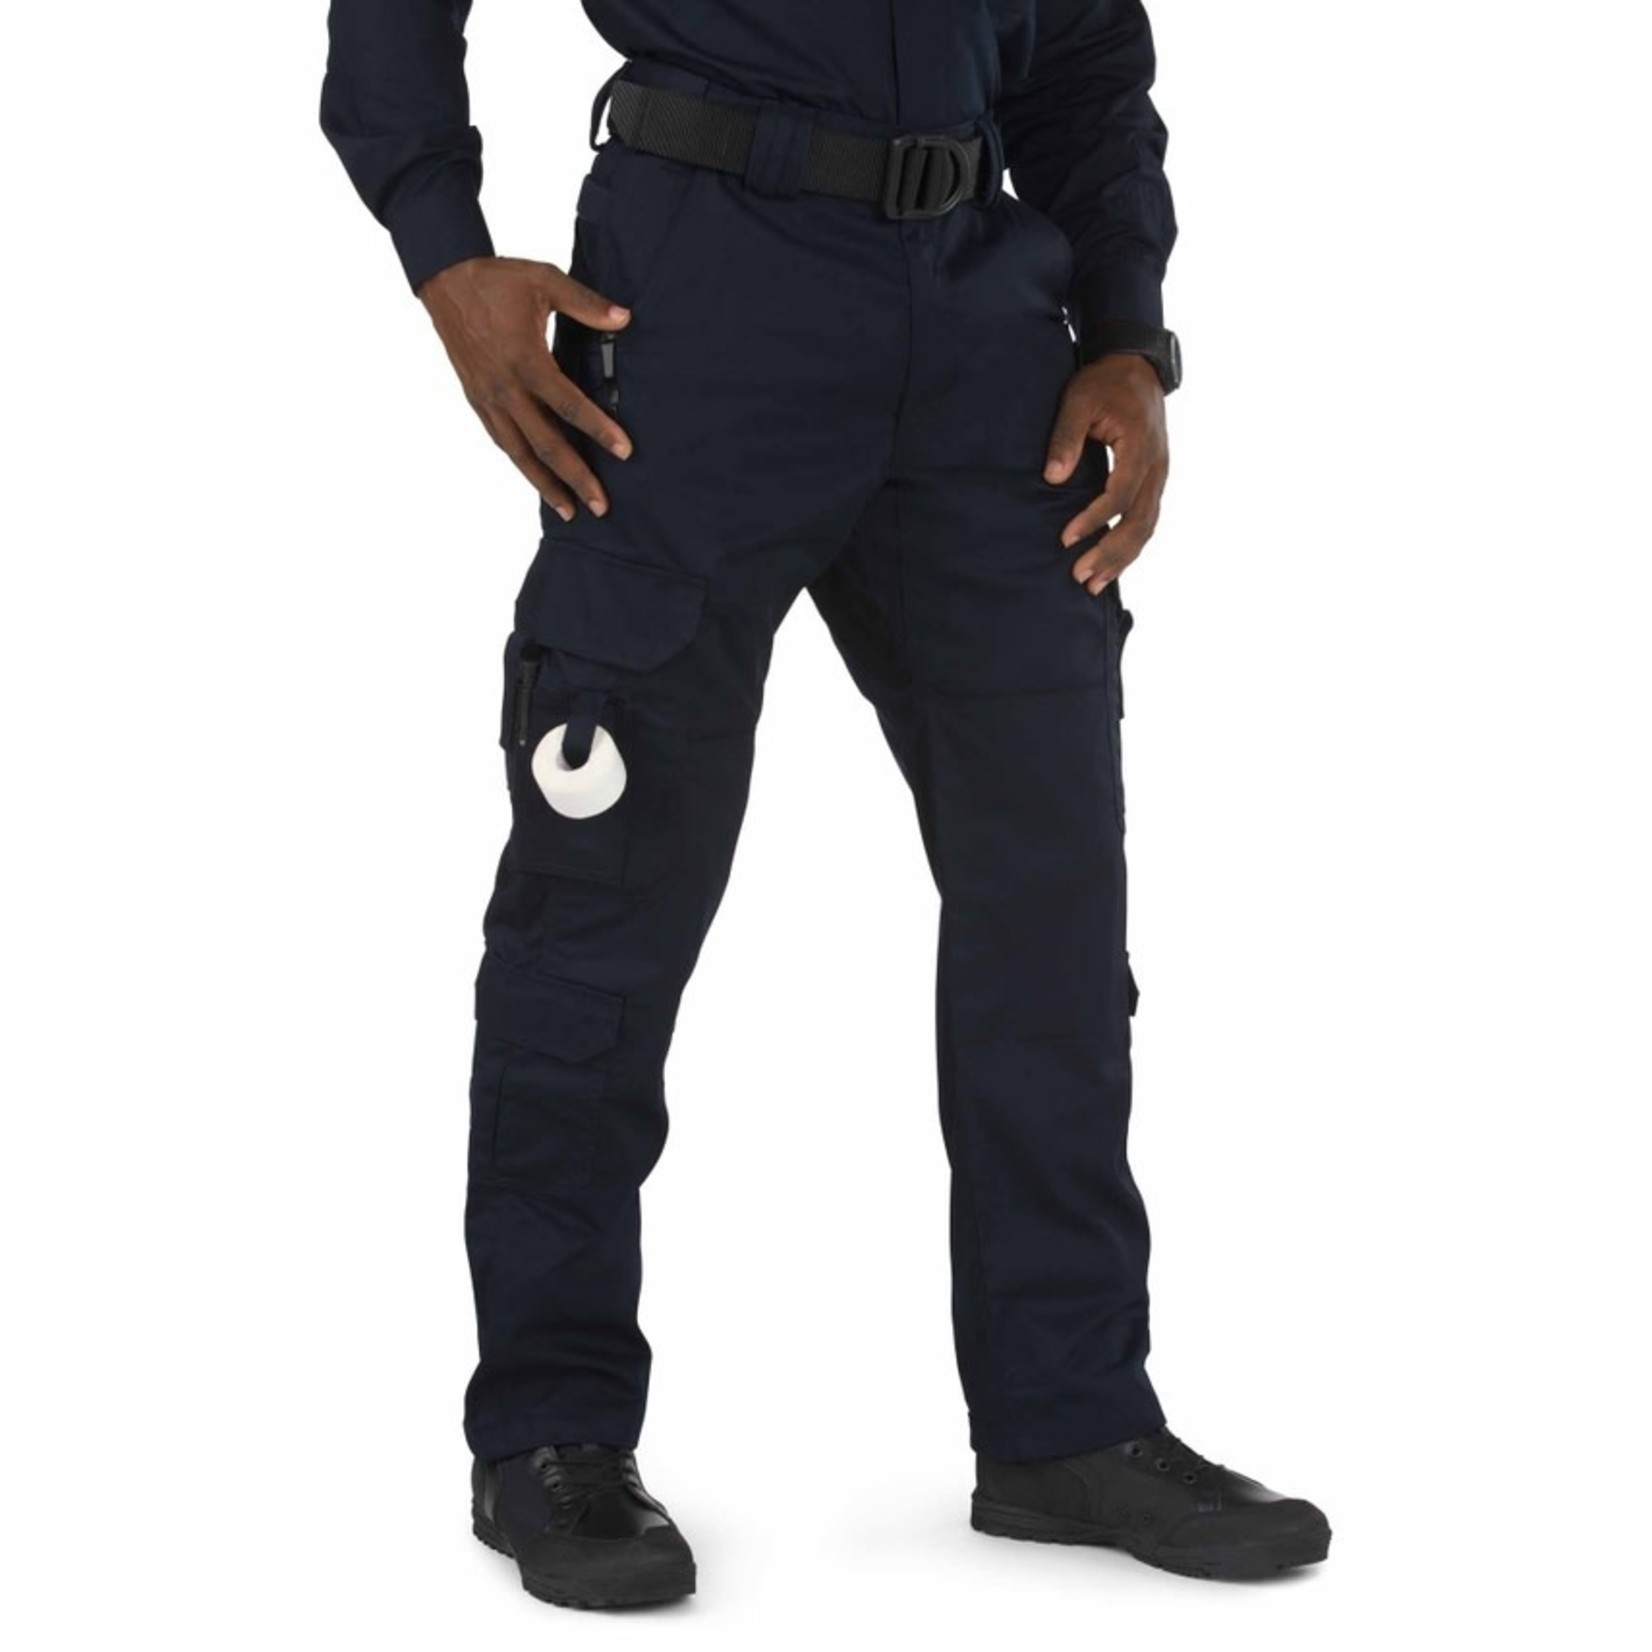 5.11 Tactical 5.11 Men's EMS Pants